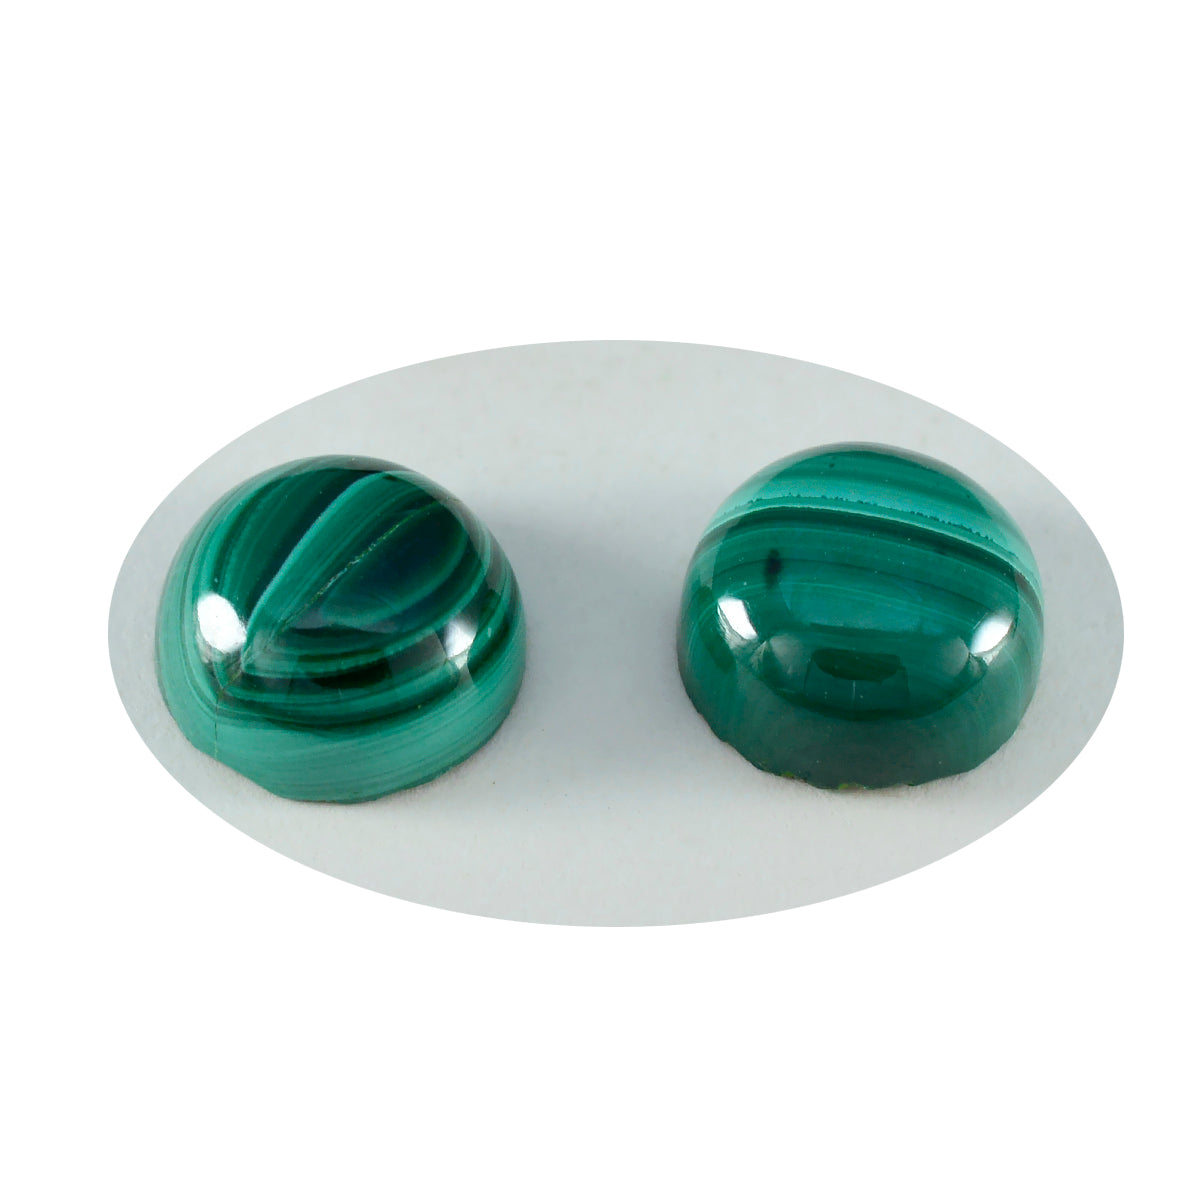 Riyogems, 1 pieza, cabujón de malaquita verde, 14x14mm, forma redonda, gema suelta de maravillosa calidad